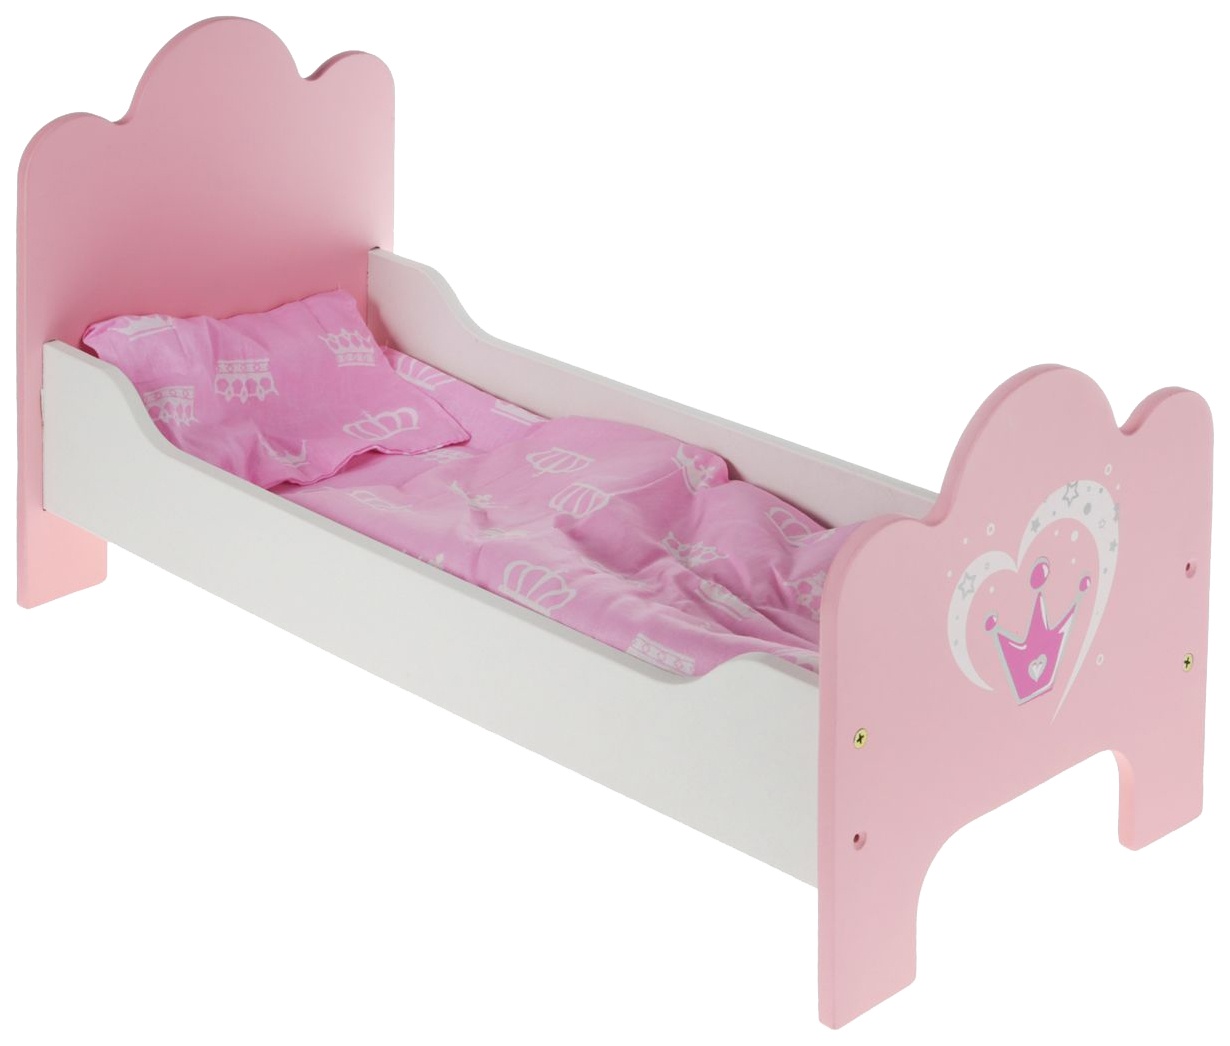 Кроватка деревянная Корона постелька в наборе 67114 для кукол Mary Poppins кроватка для кукол ип ясюкевич маленькая соня 2 х ярусная деревянная 5274815